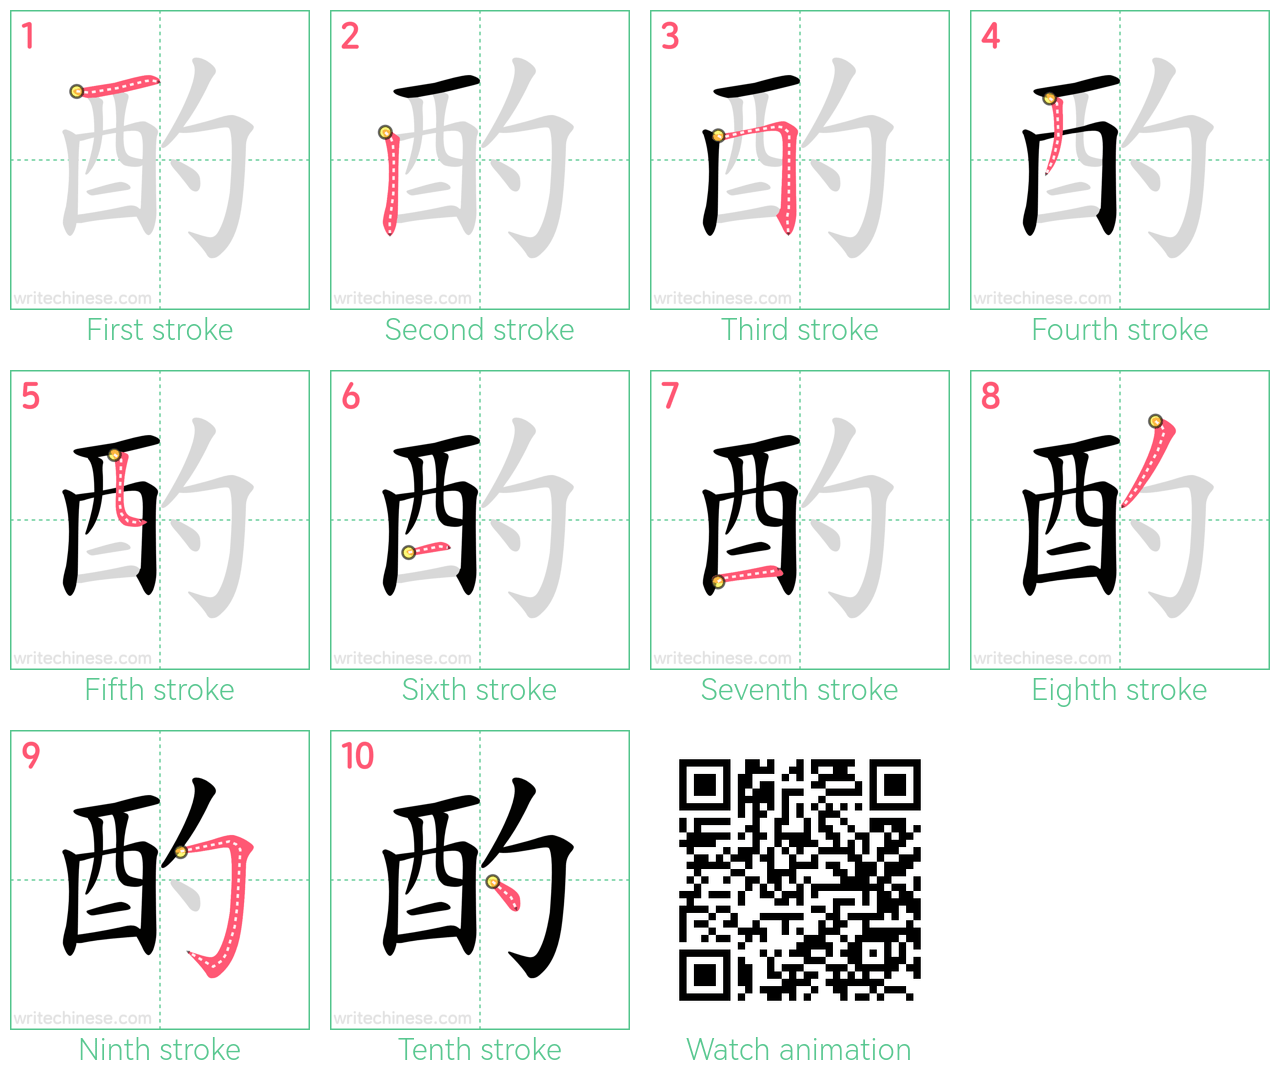 酌 step-by-step stroke order diagrams